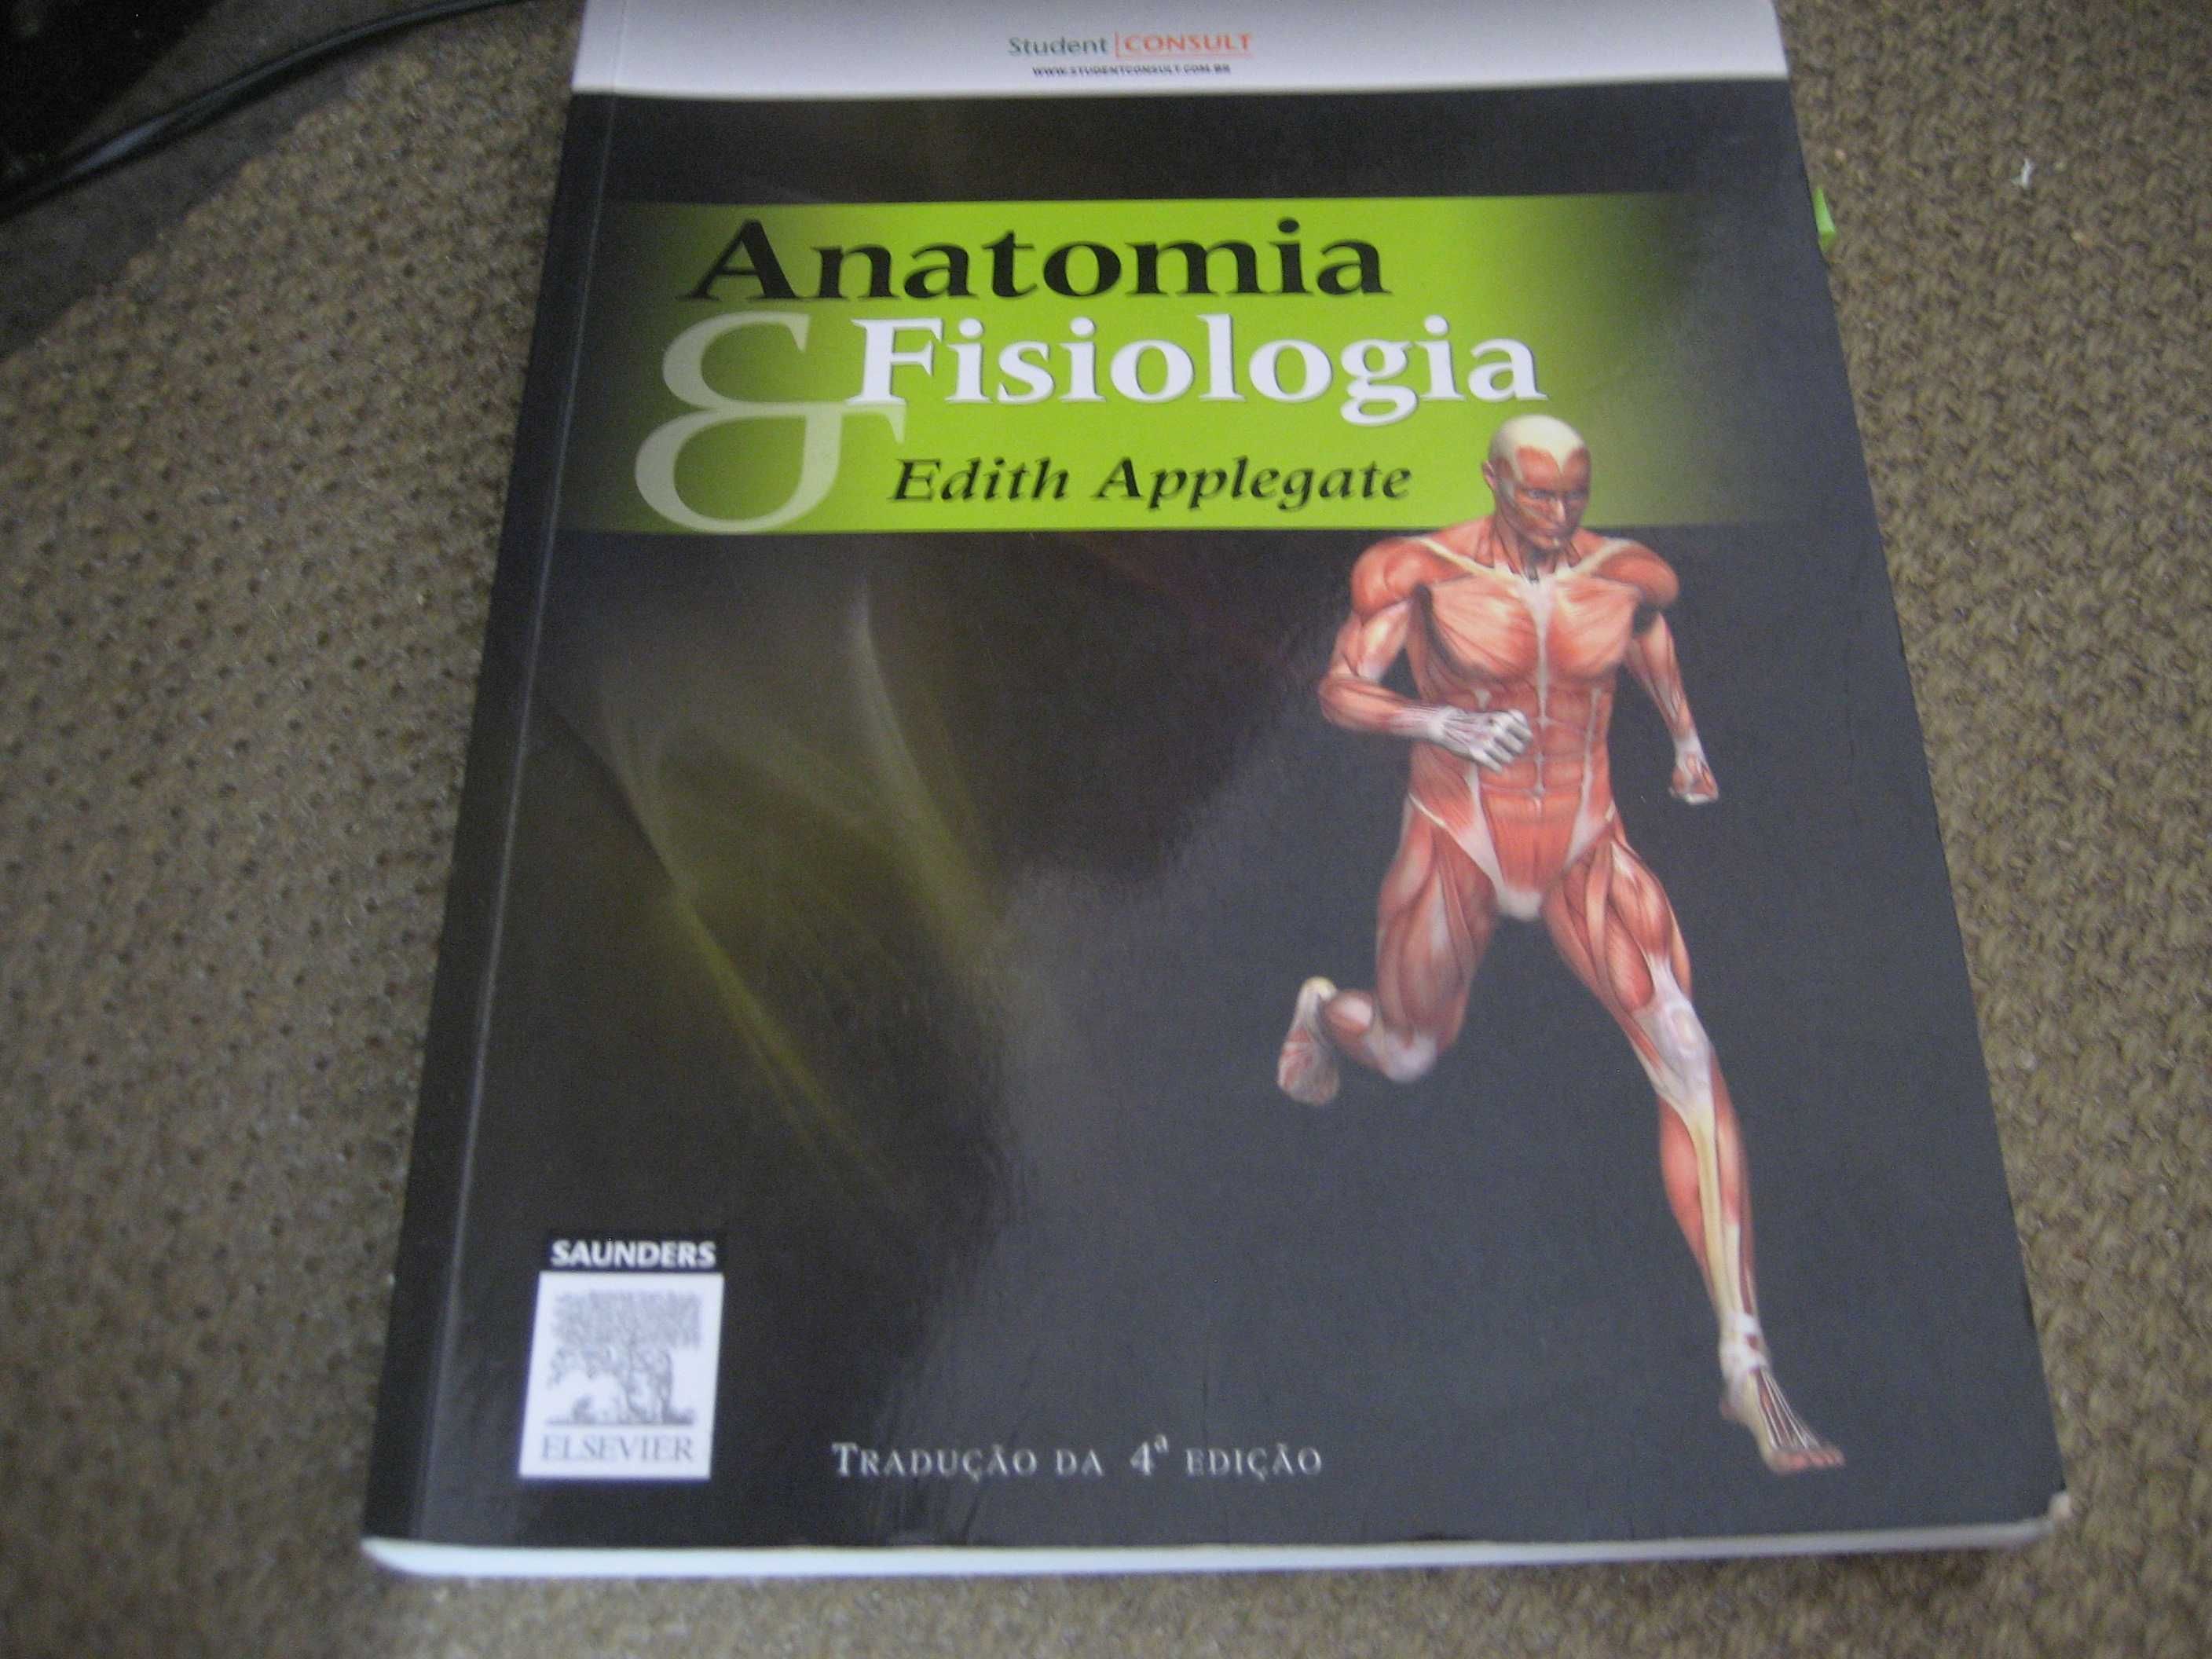 Livros de Anatomia, Medicina, Neuro ciências - ótimos preços!